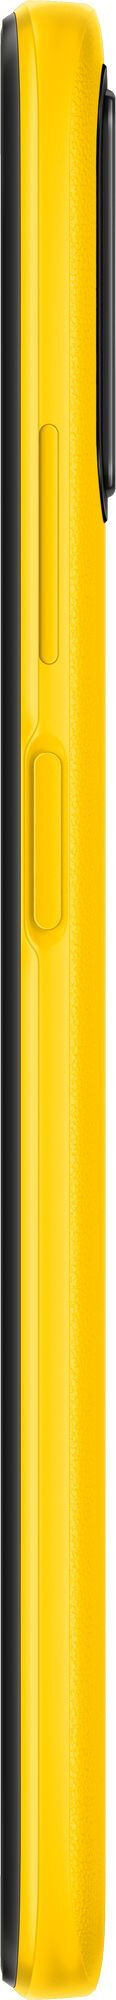 Смартфон Xiaomi Poco M3 4/64GB Poco Yellow (Желтый)